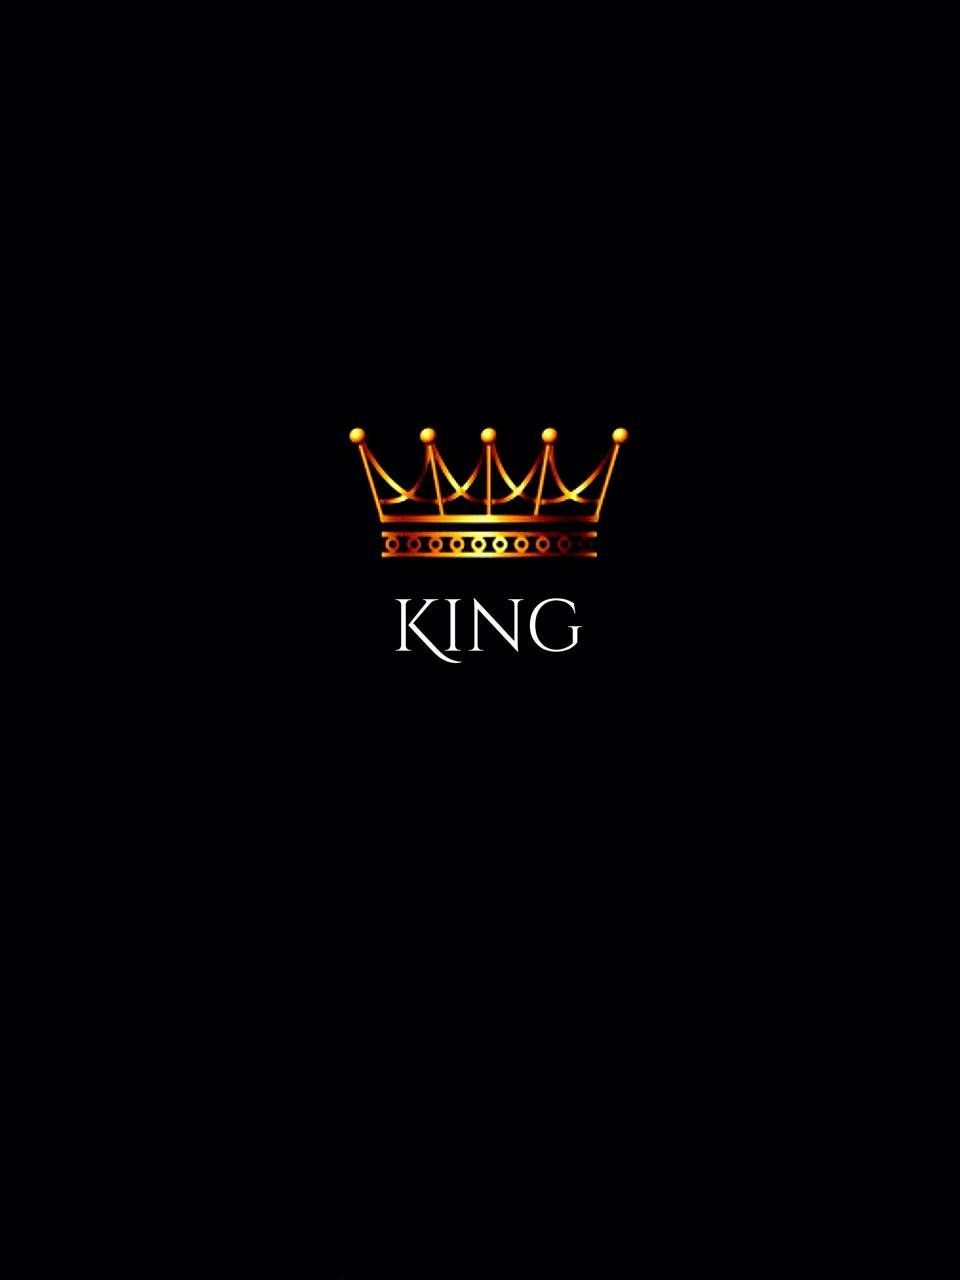 Black King Wallpaper Free Black King Background